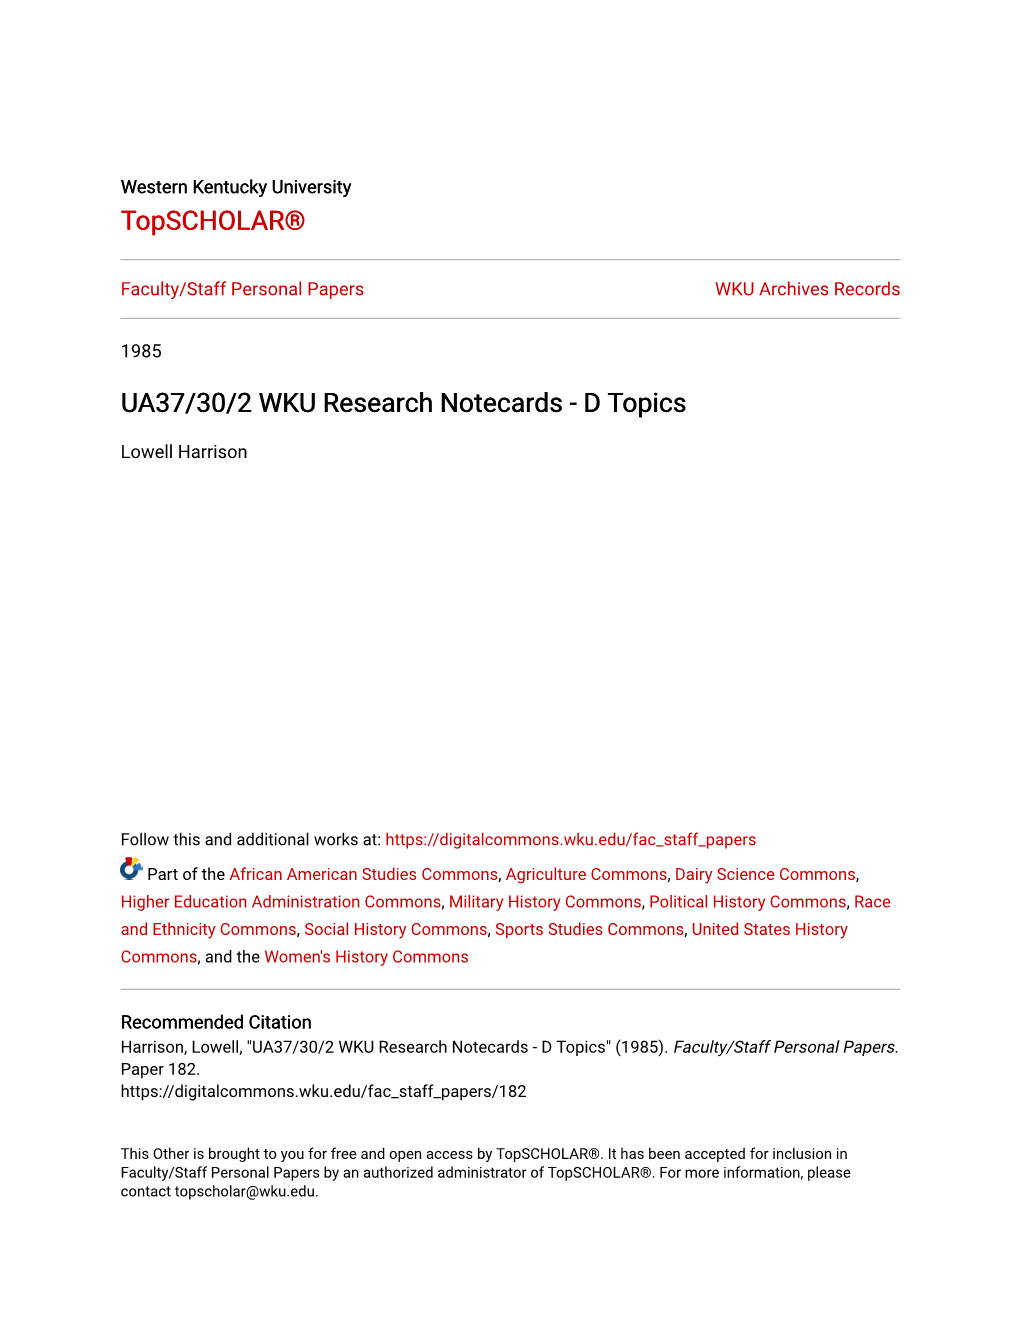 UA37/30/2 WKU Research Notecards - D Topics